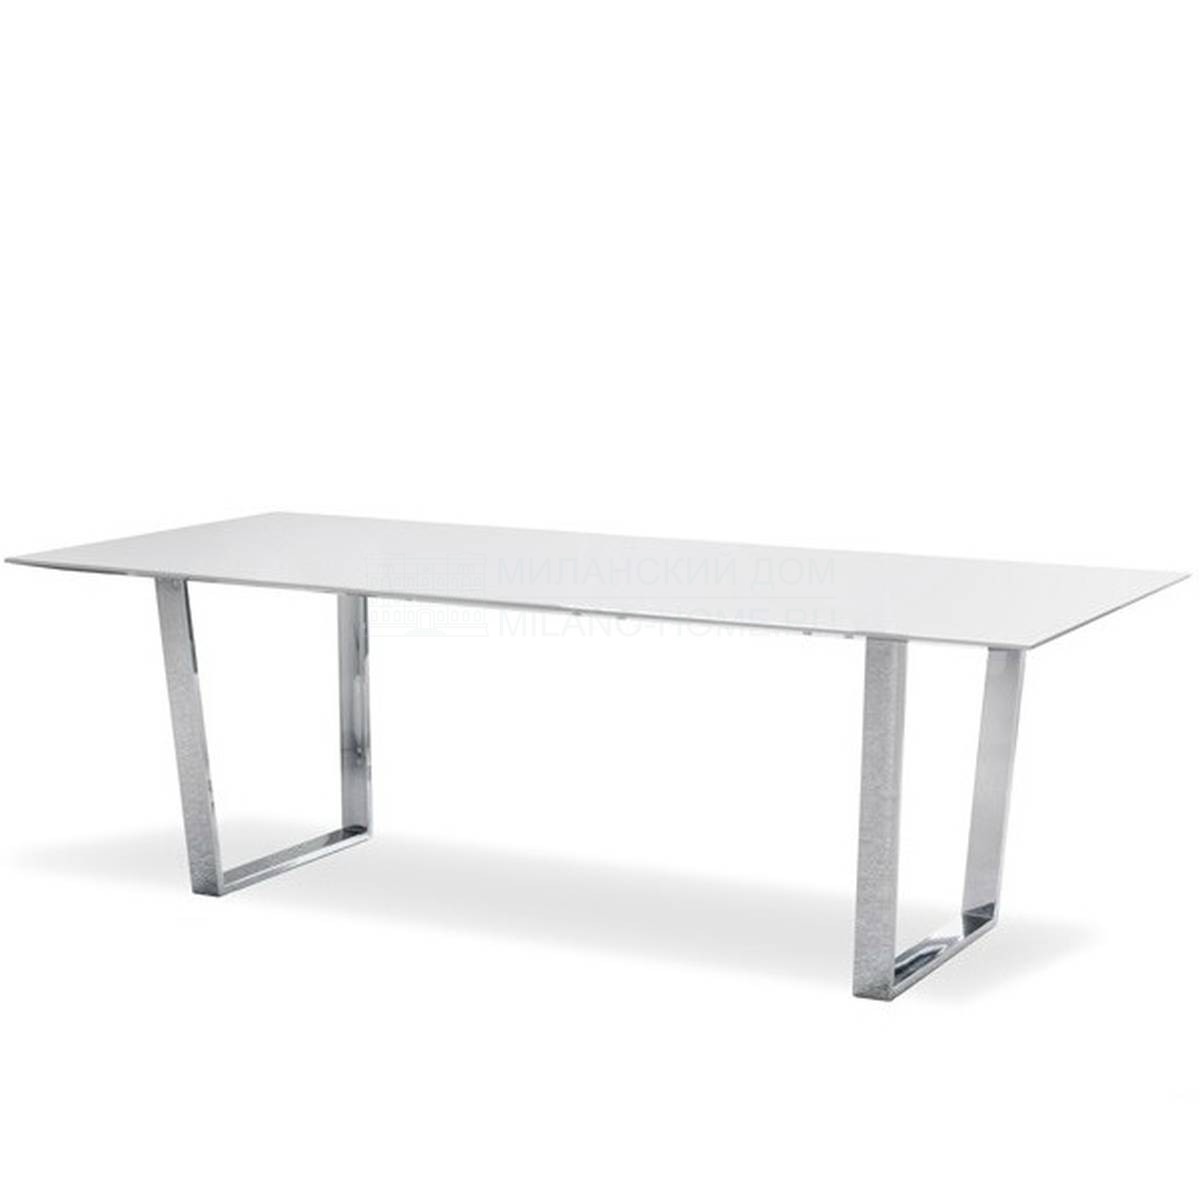 Обеденный стол U.table из Италии фабрики TONON